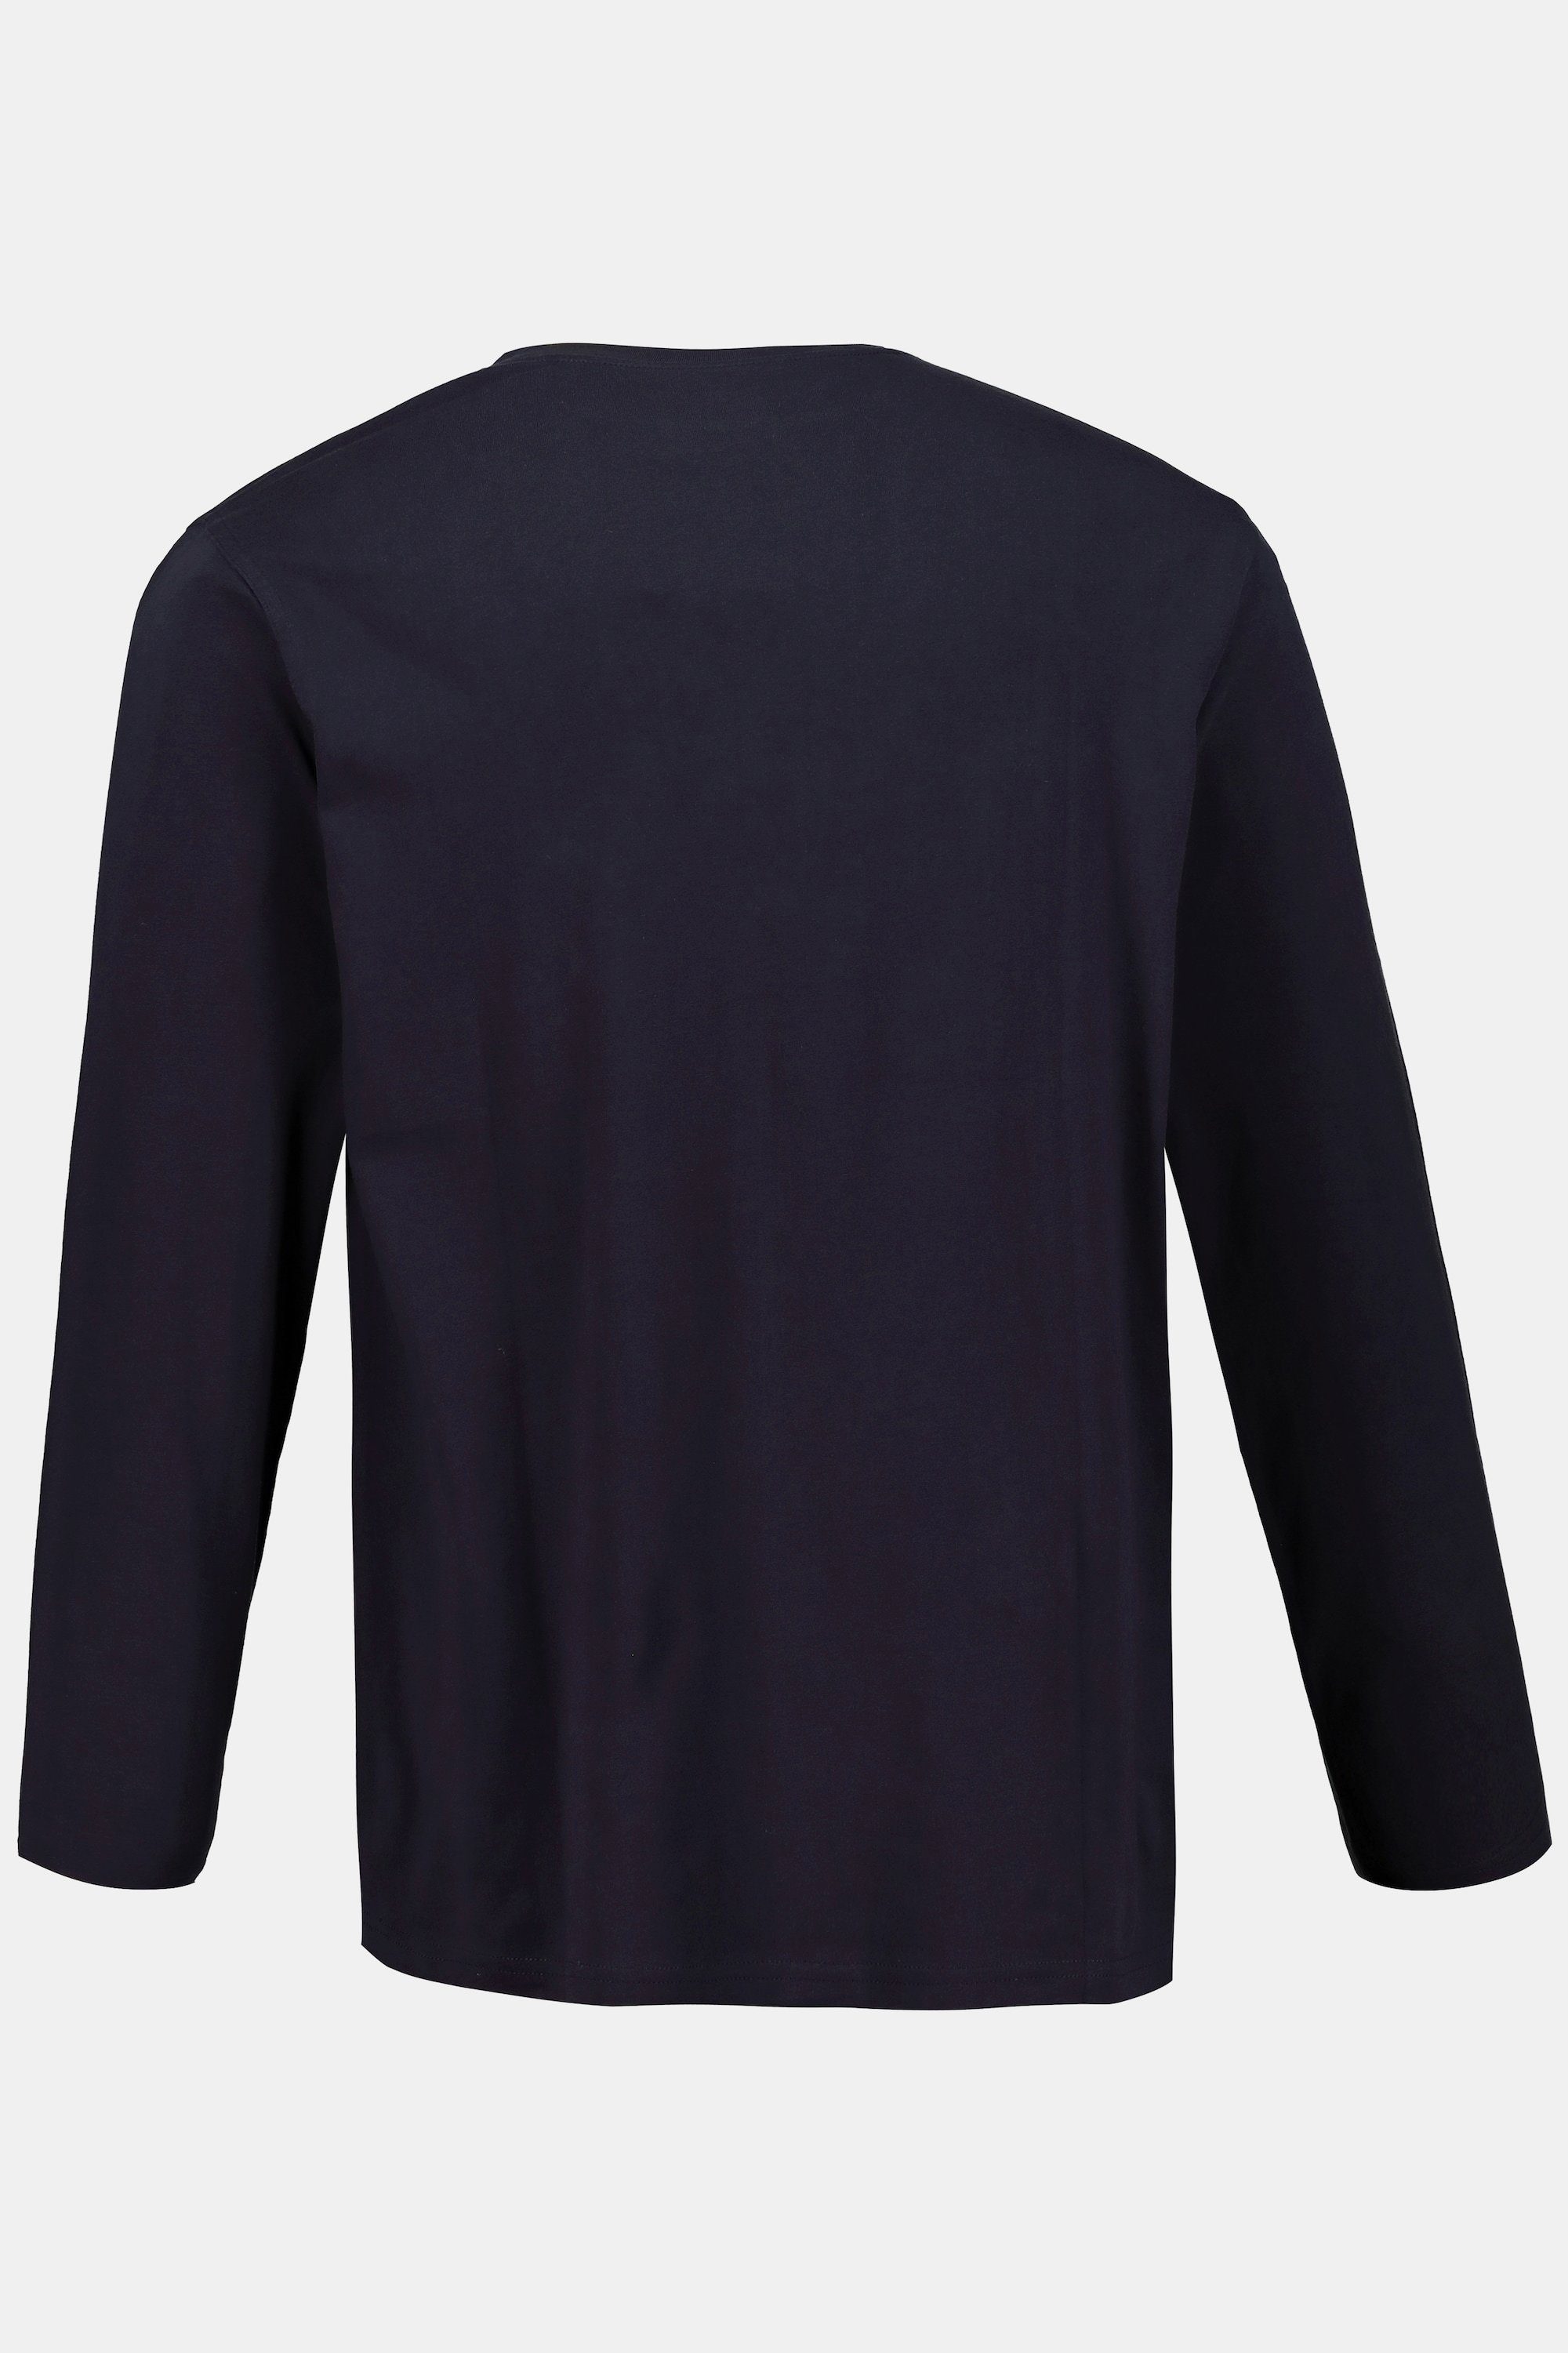 JP1880 Langarmshirt marine bis 8XL dunkel T-Shirt Basic